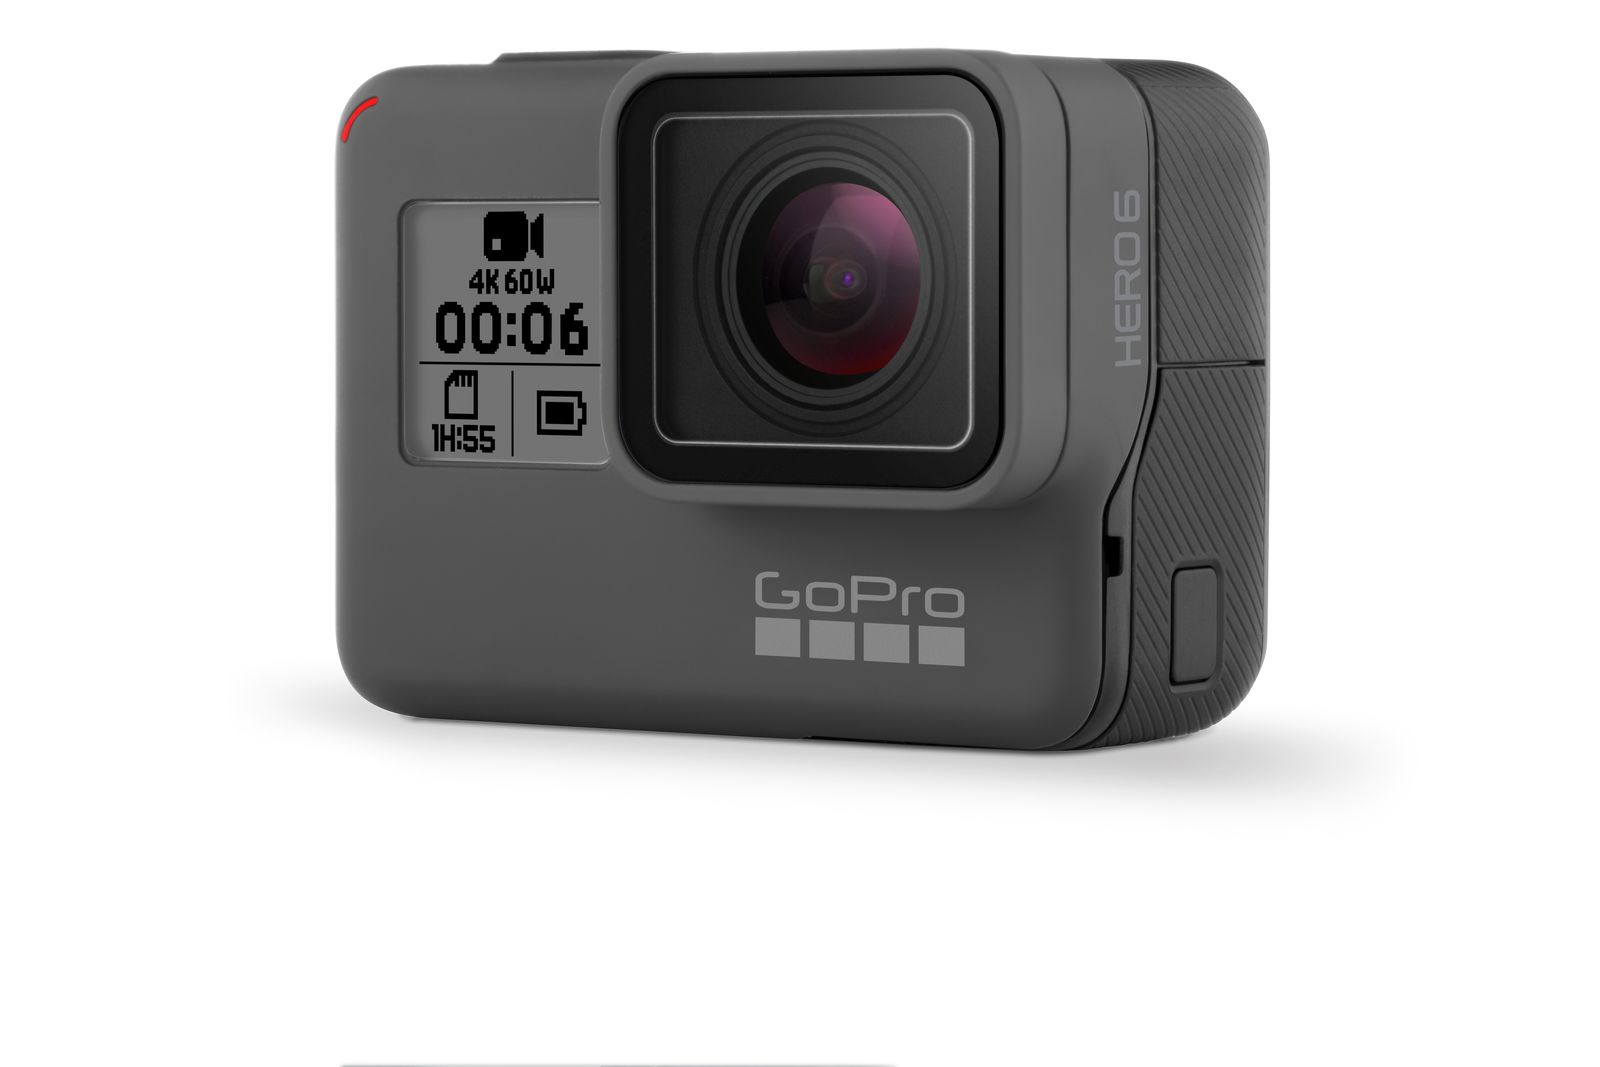 GoPro Hero 6 Black chính thức, quay video 4K tốc độ 60 fps, giá 500 USD, có thể đặt hàng ngay